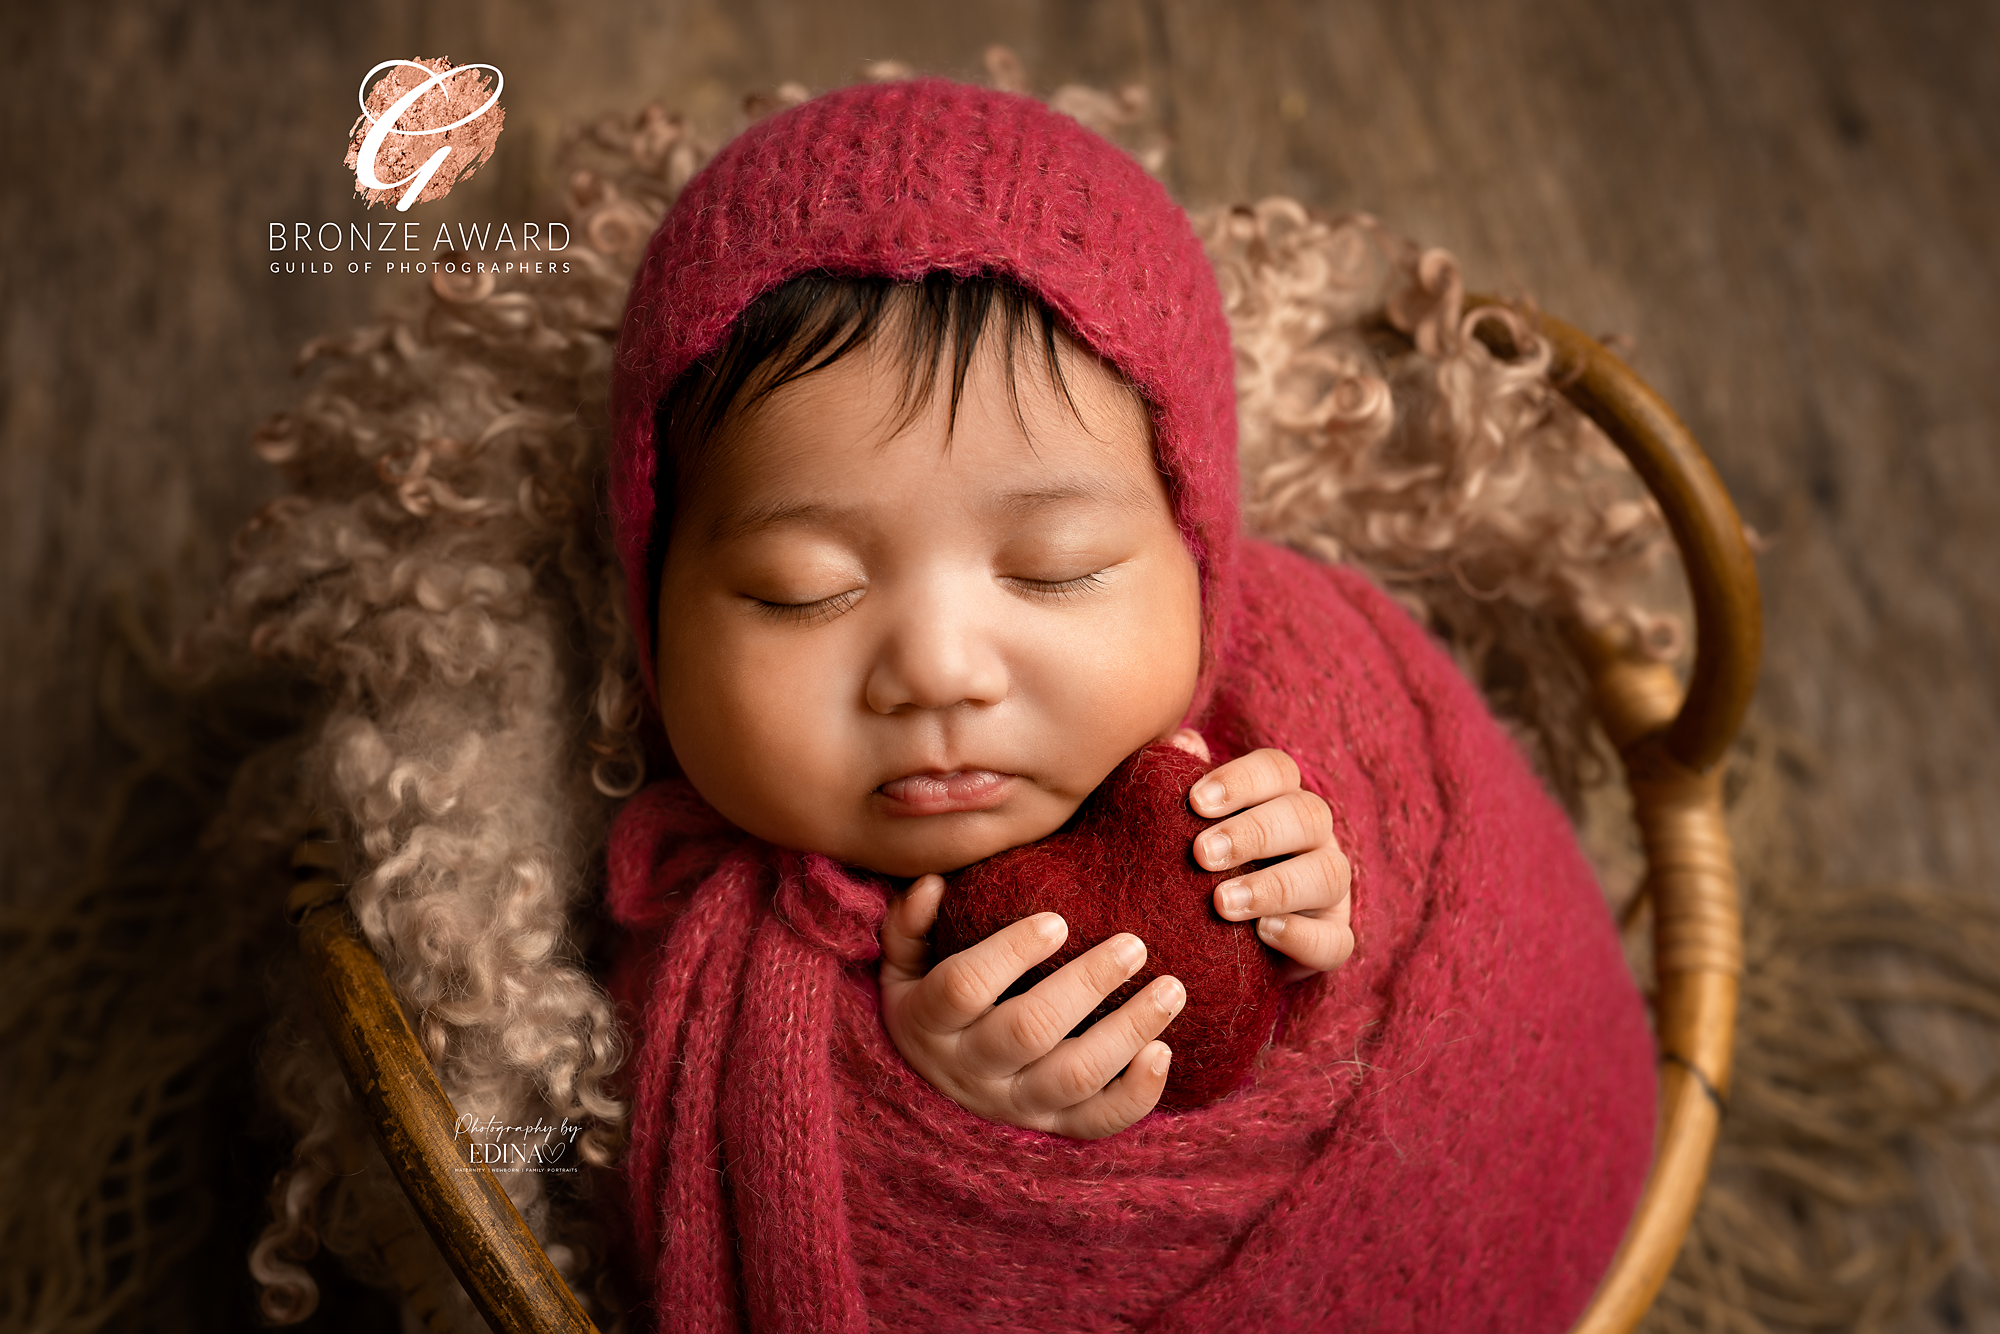 award winning newborn image by Photography by Edina